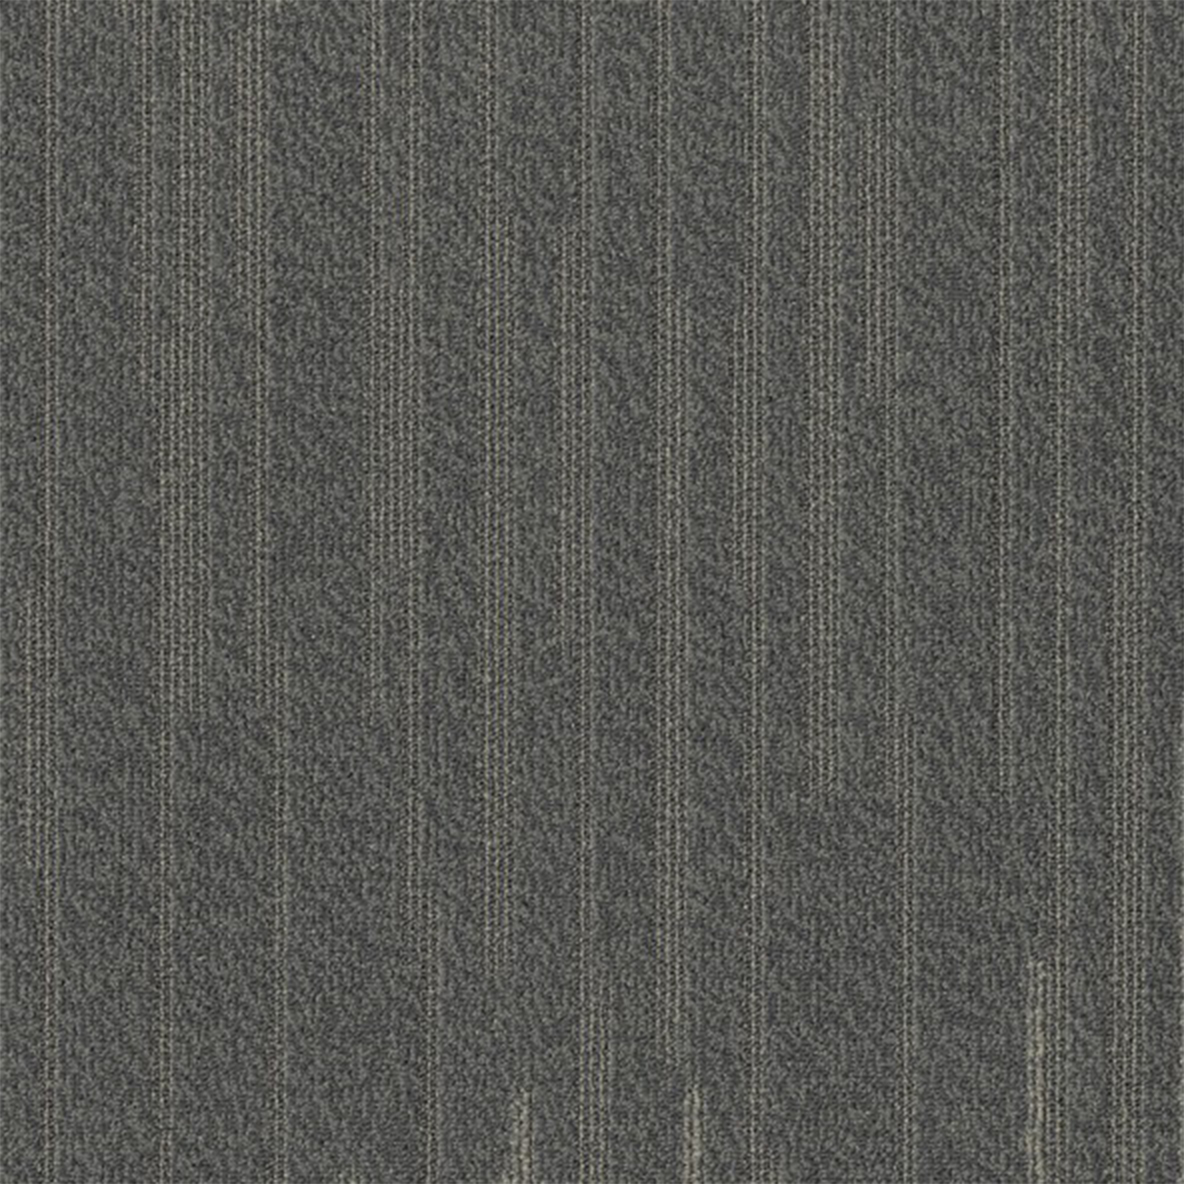 Earthtone color close up Quicken Commercial Carpet Tile .42 Inch x 50x50 cm per Tile